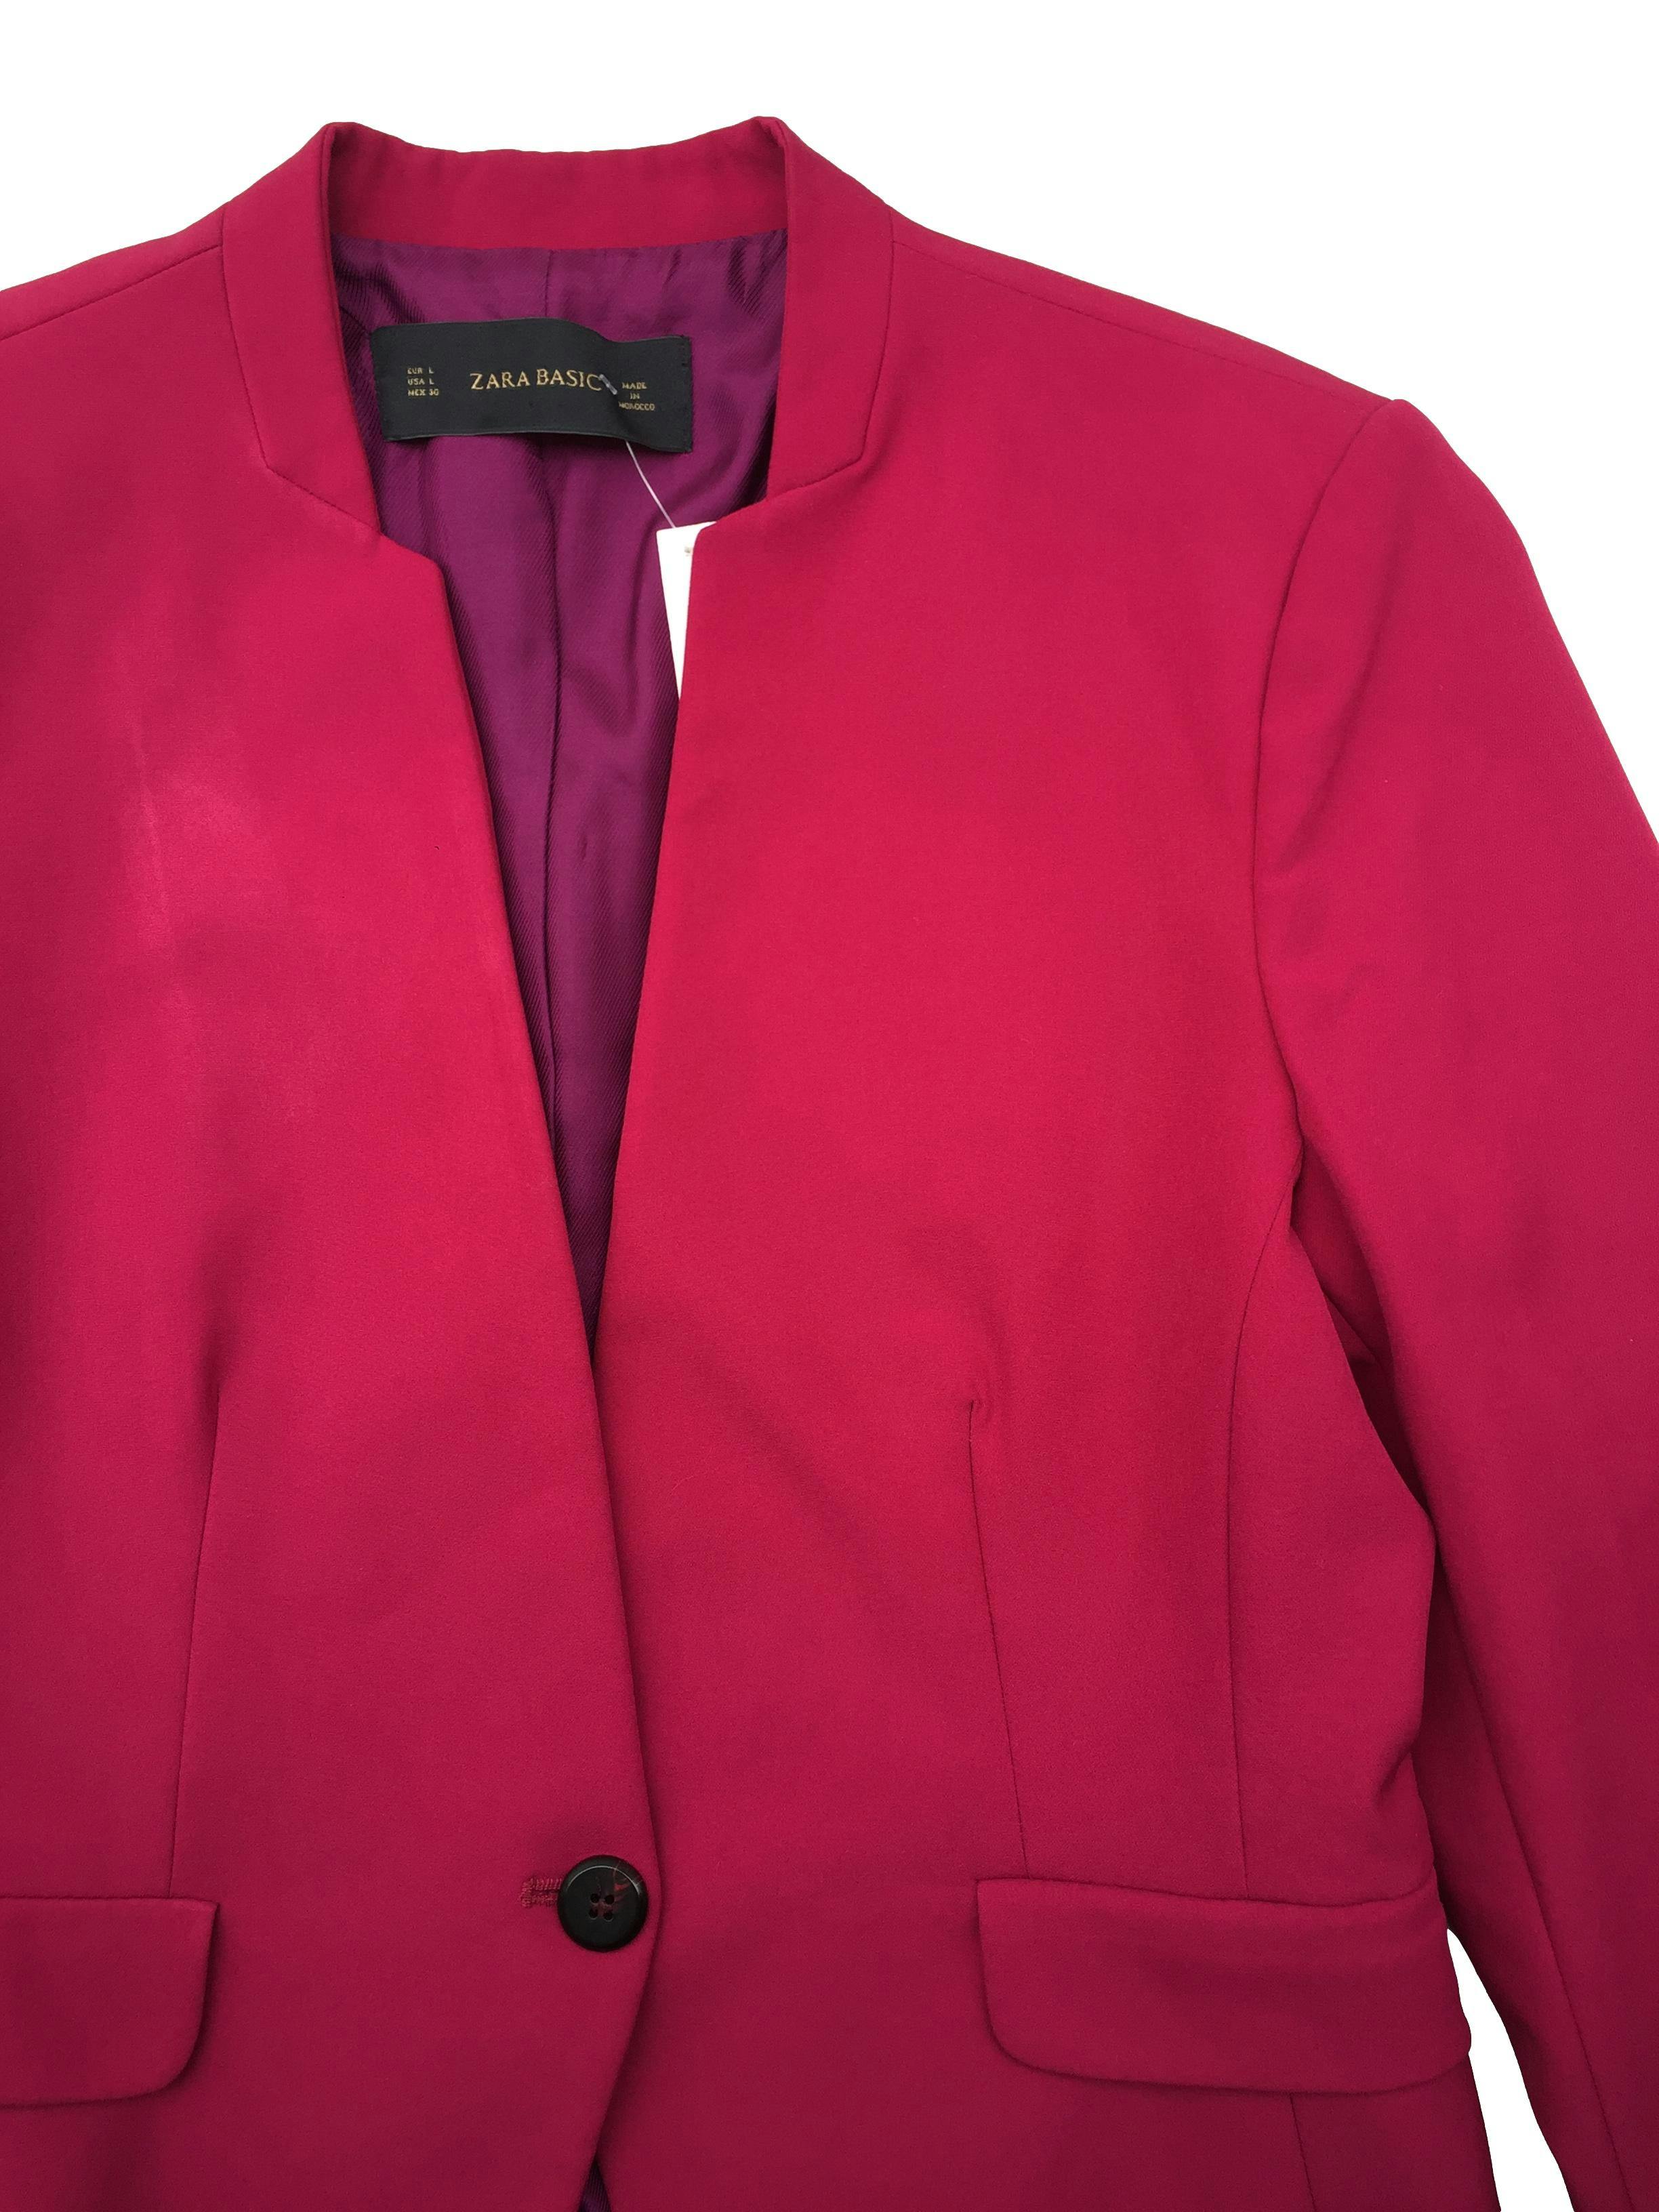 Blazer Zara color magenta, modelo de un solo botón con forro, hombreras y falsos bolsillos. Busto 100cm, Largo 56cm.